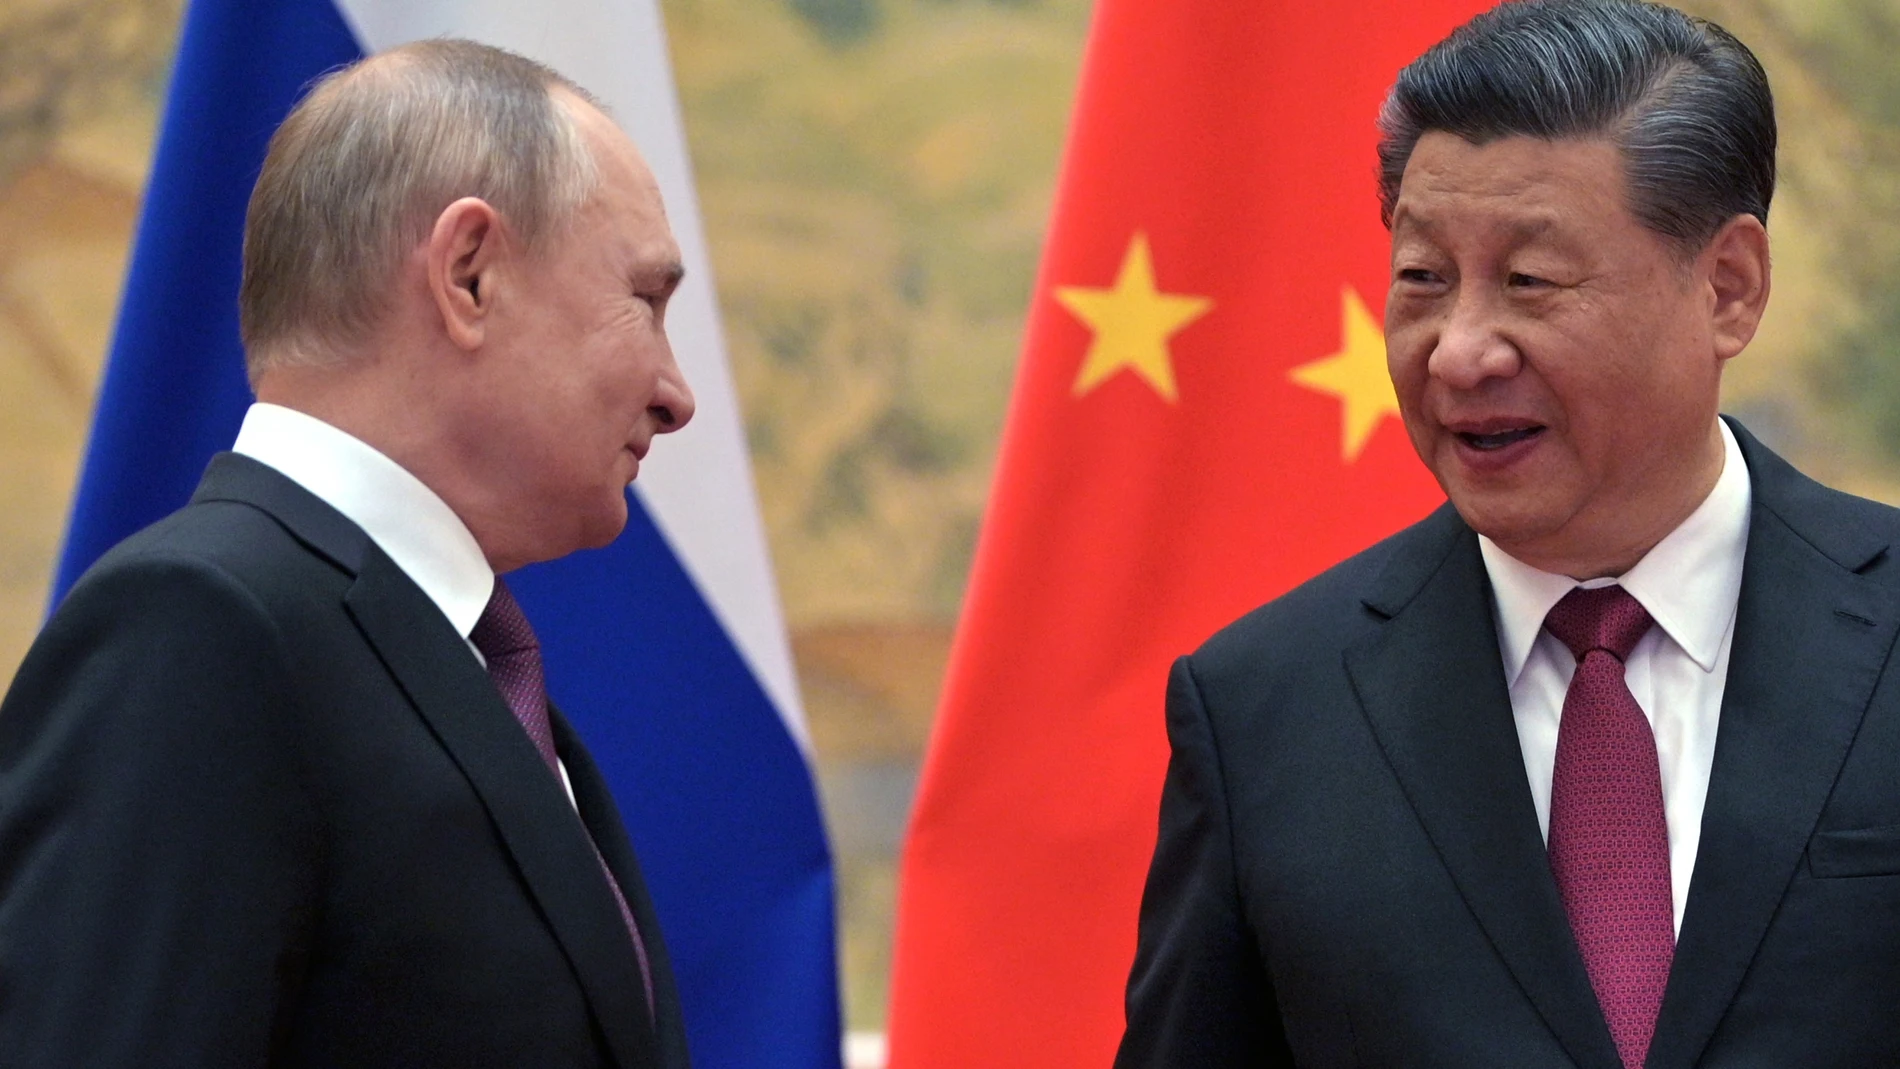 El presidente de Rusia, Vladimir Putin, y el presidente de China, Xi Jinping, se saludan en Pekín, el 4 de febrero de 2022